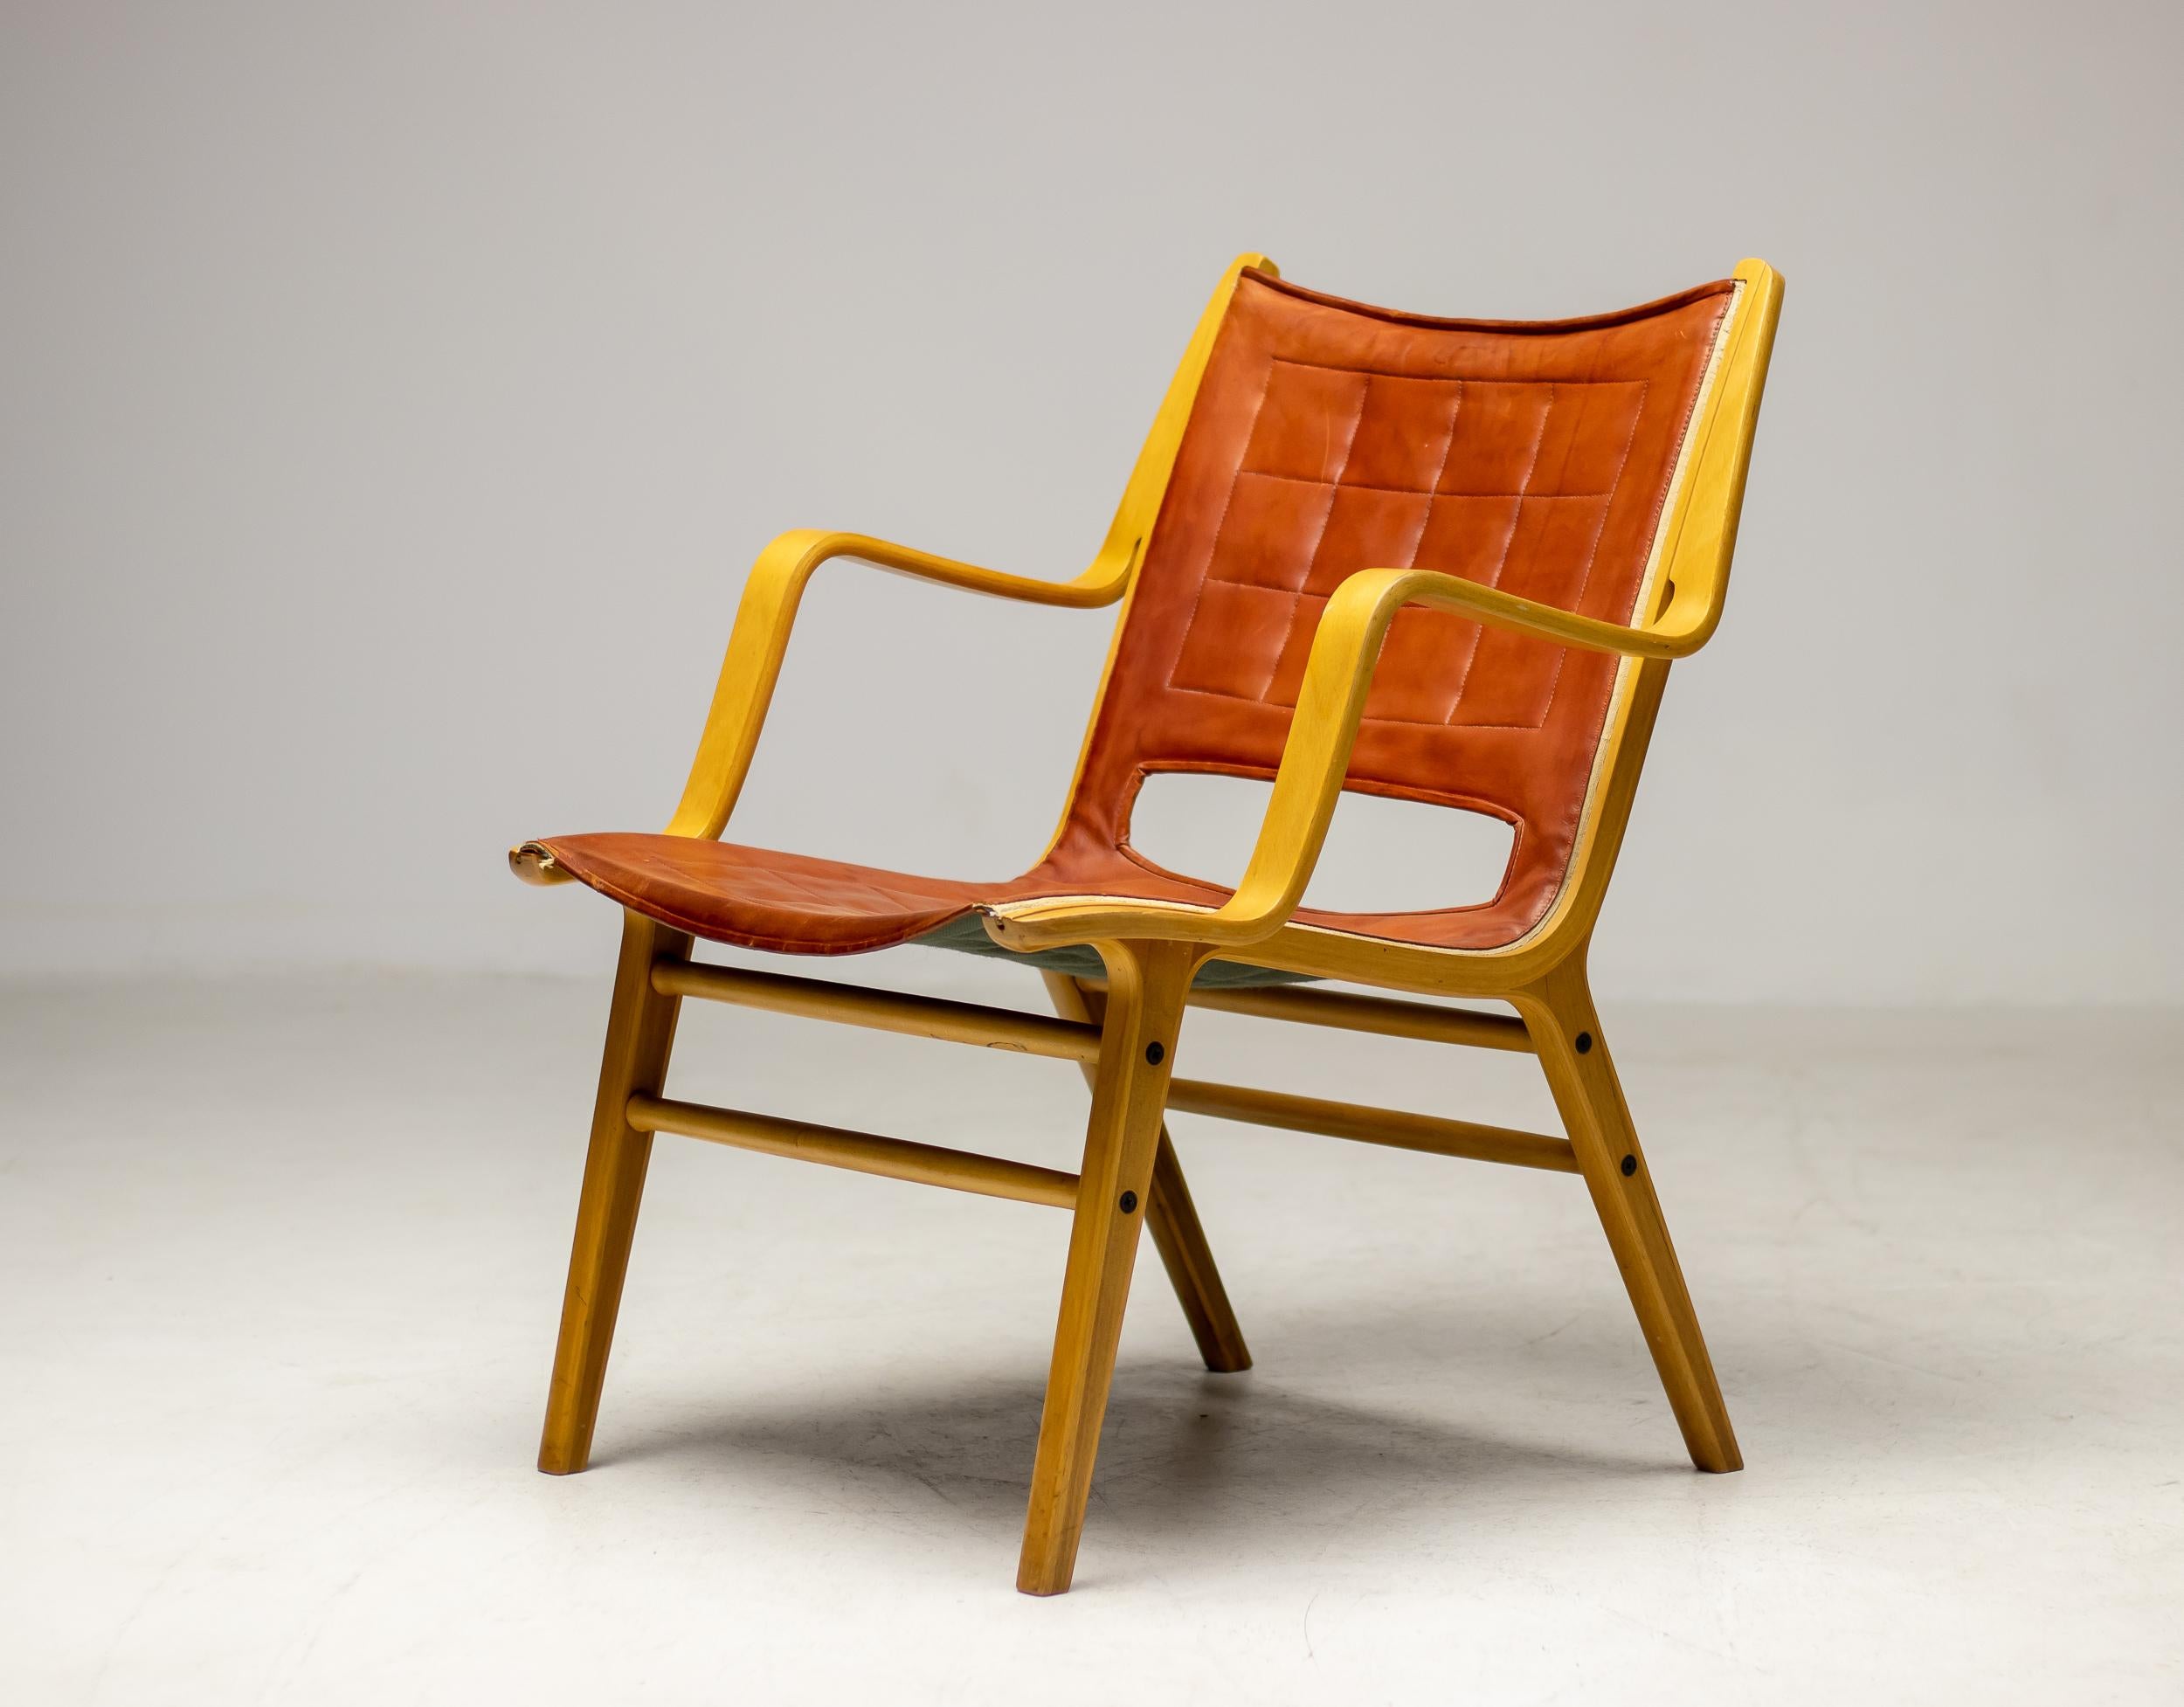 Sessel, entworfen von Peter Hvidt und Orla Mølgaard-Nielsen, hergestellt 1963 von Fritz Hansen, Dänemark.  Der Stuhl ist aus laminiertem Buchenholz gepresst, die Sitzfläche ist mit dem originalen cognacfarbenen Leder gepolstert. Die Beine haben